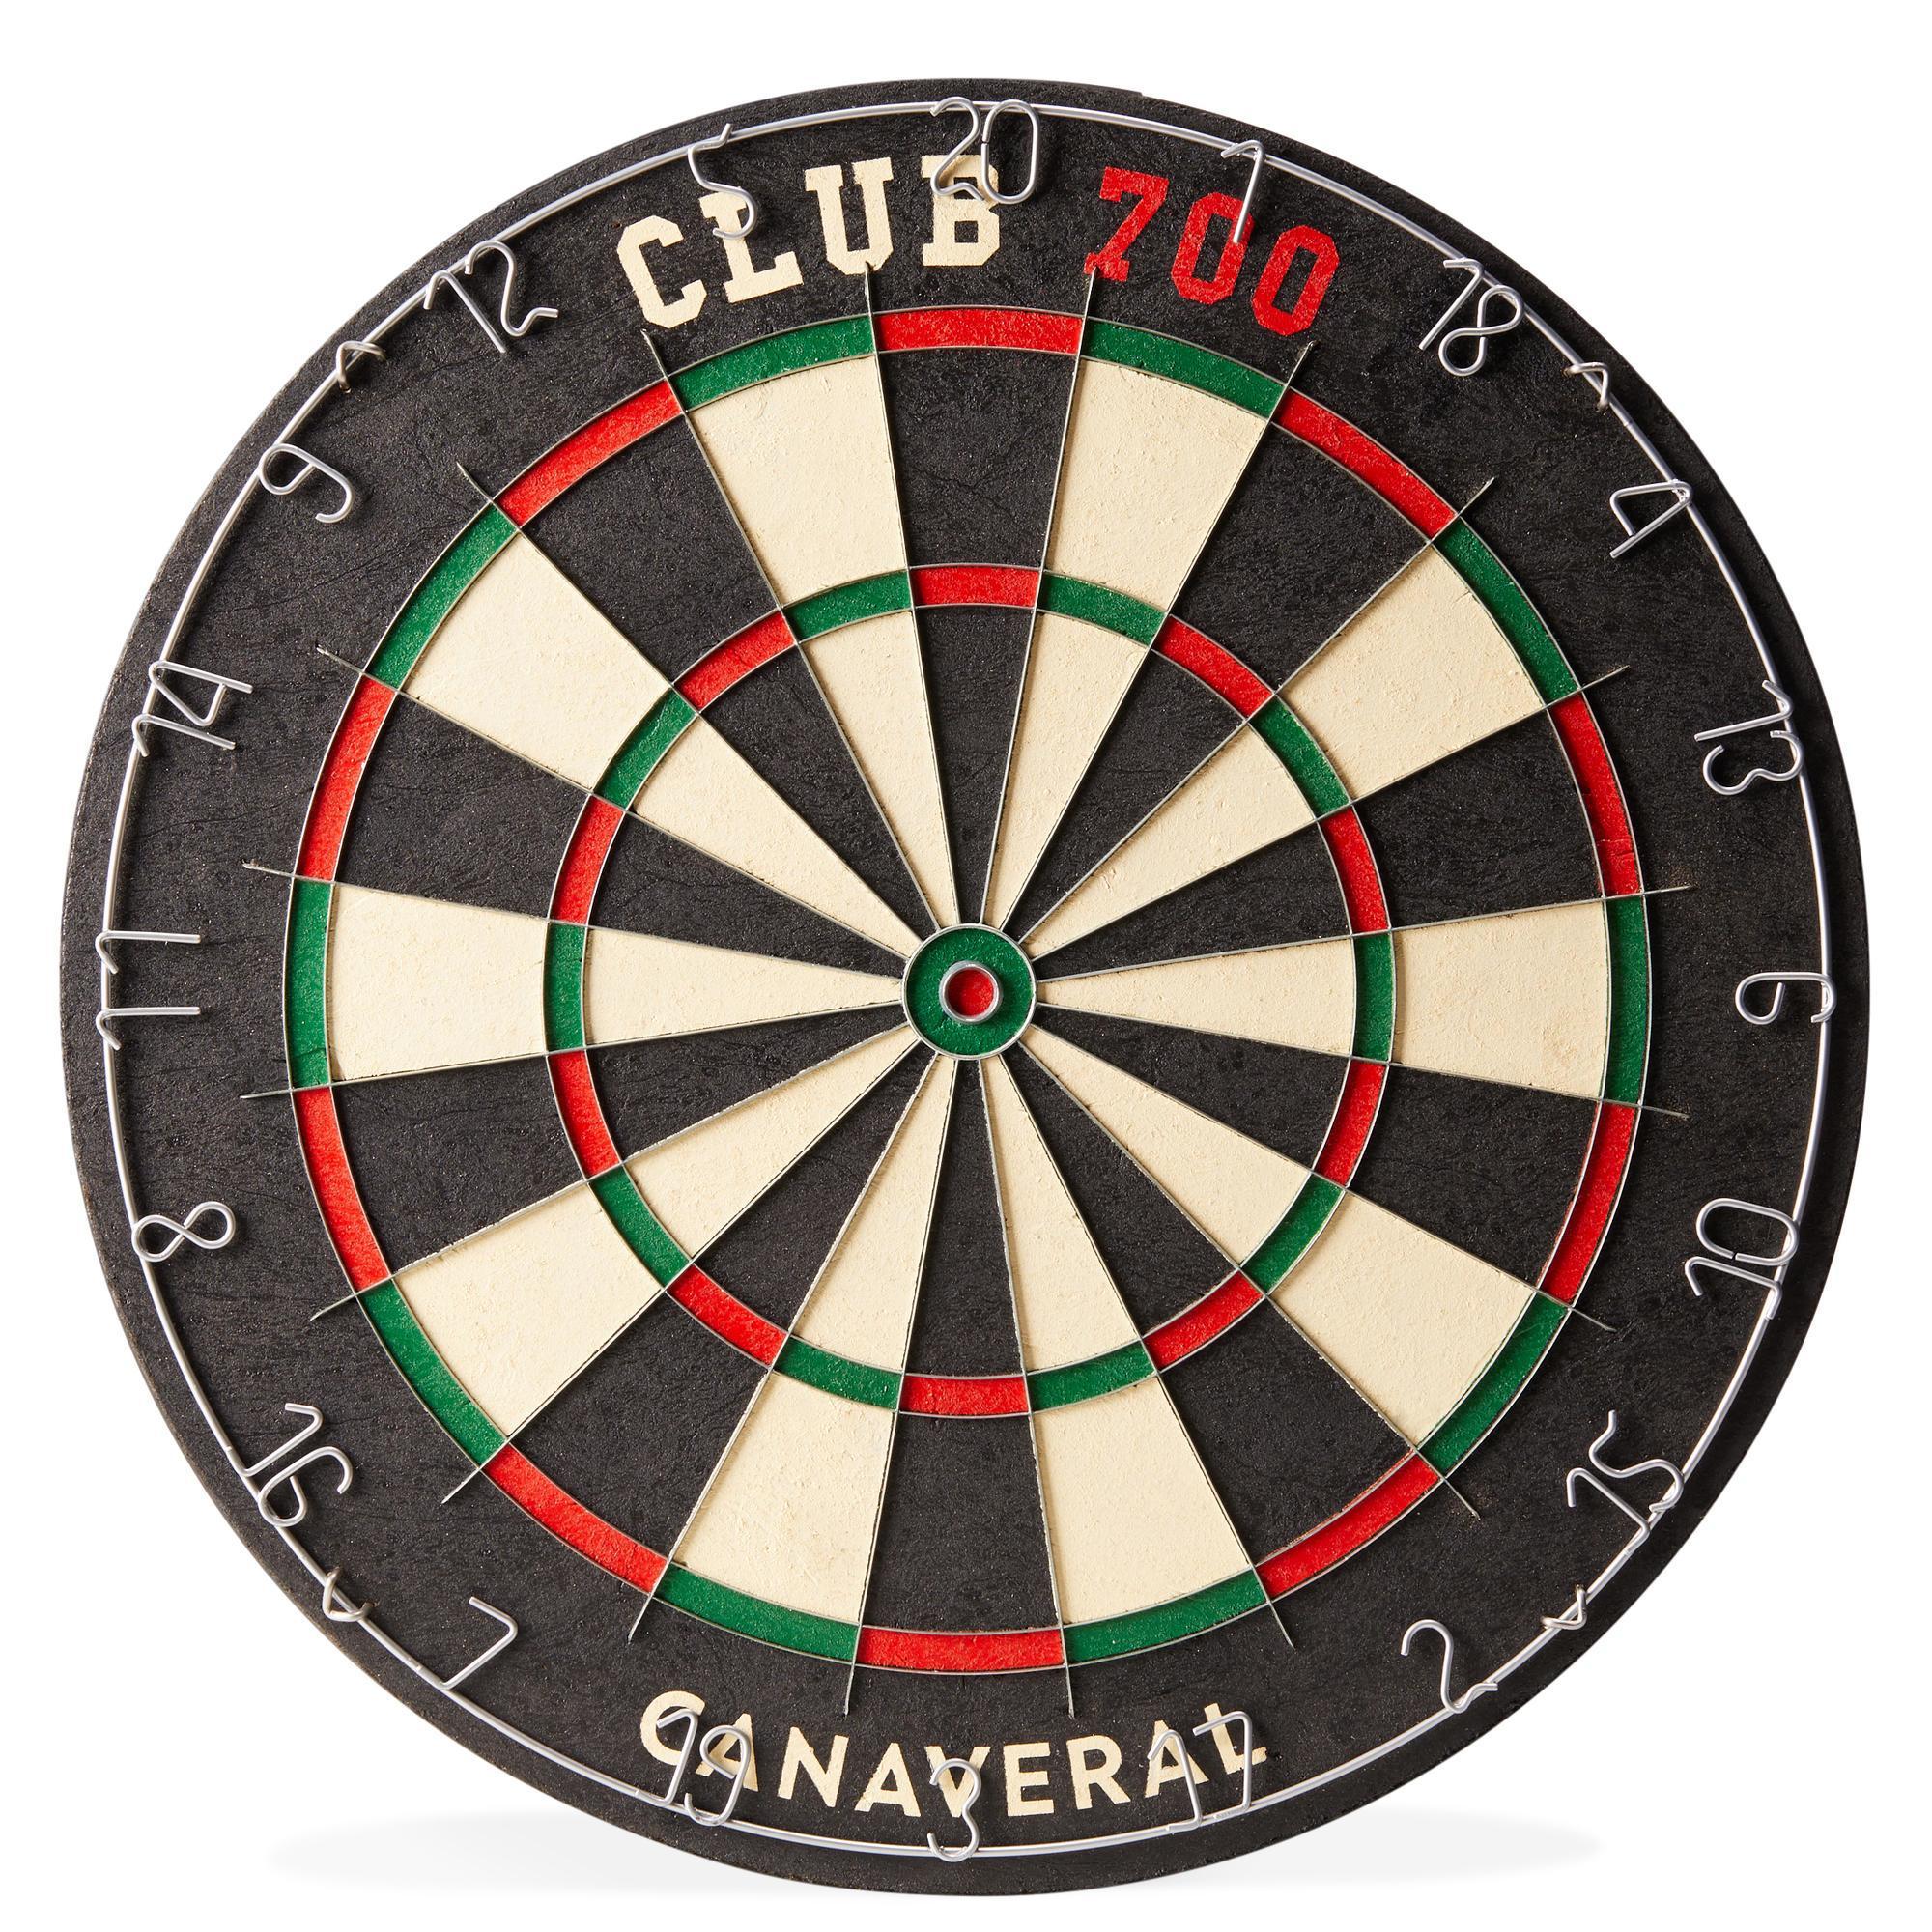 Ţinţă Clasică Darts Club 700 pentru săgeți din oțel 700